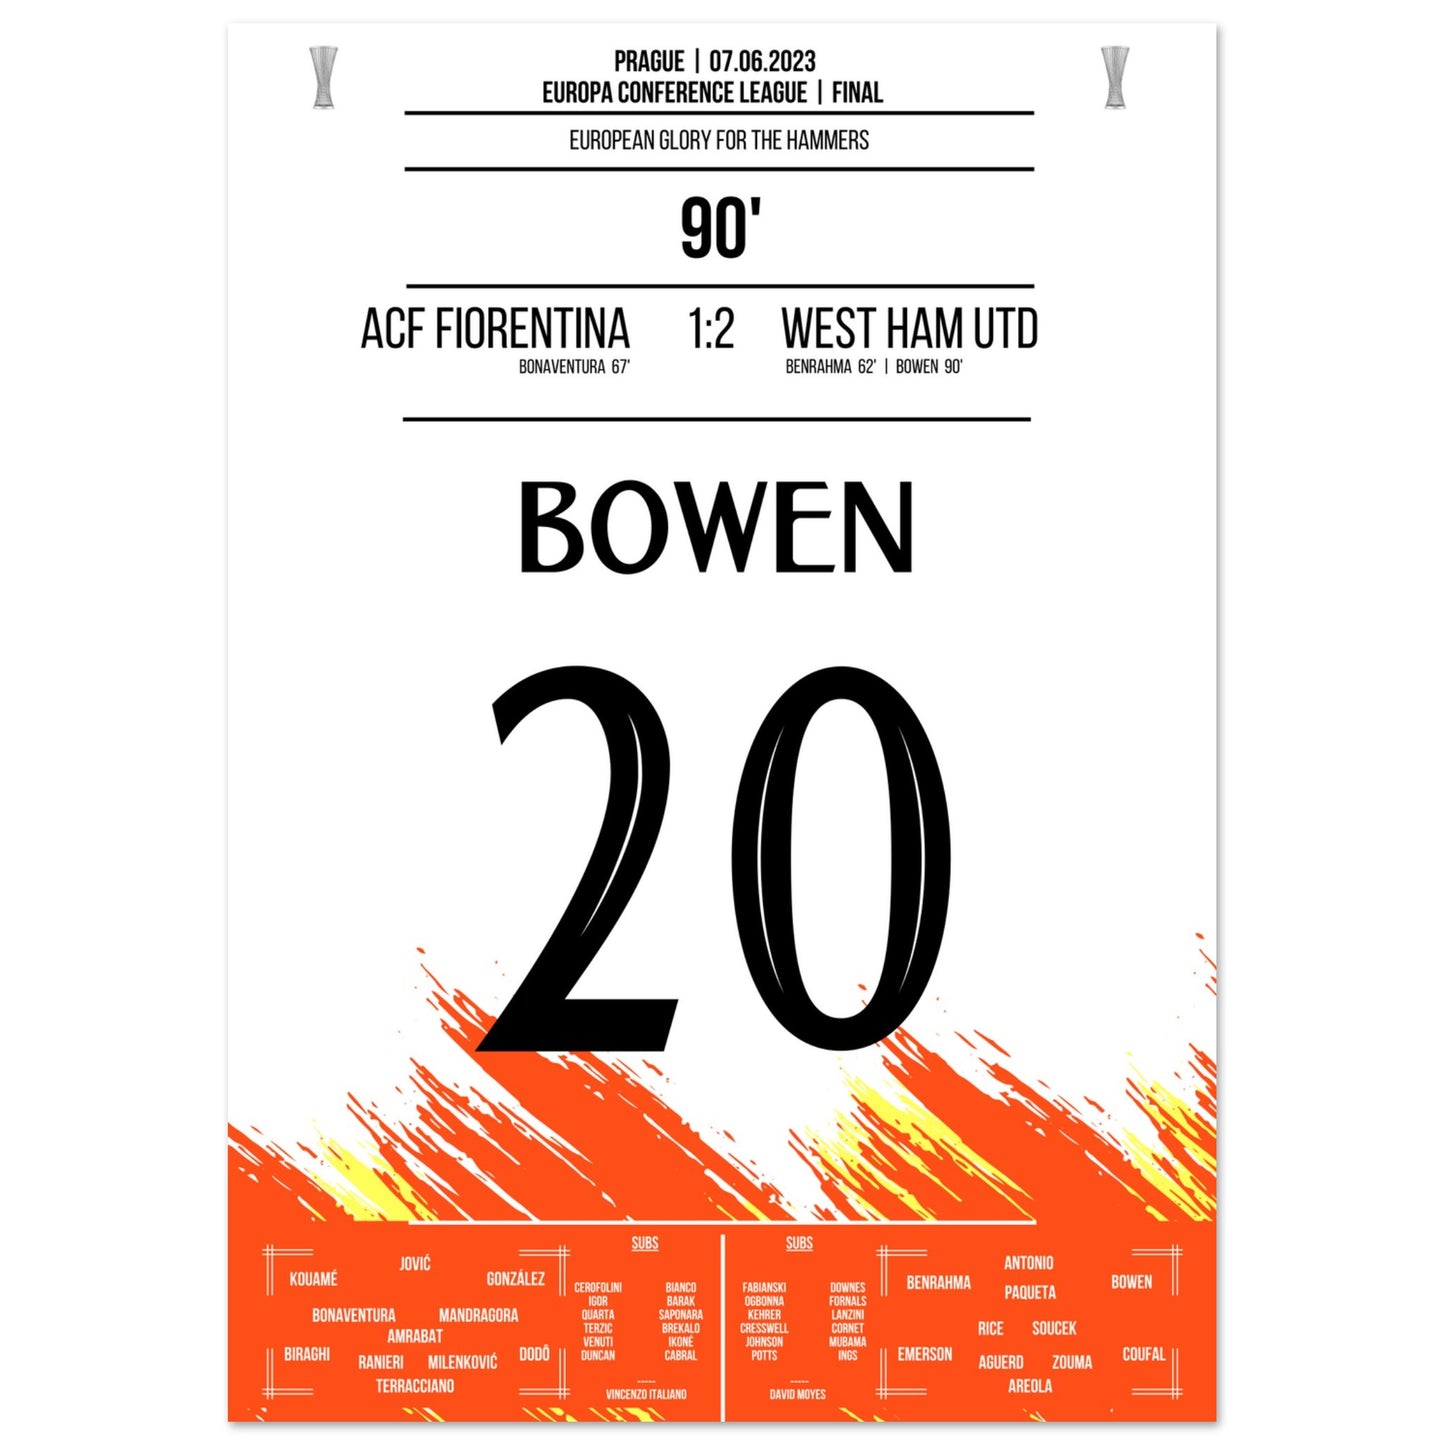 Bowen's Last-Minute Siegtreffer zum Europapokal Triumph für die "Hammers" A4-21x29.7-cm-8x12-Ohne-Rahmen